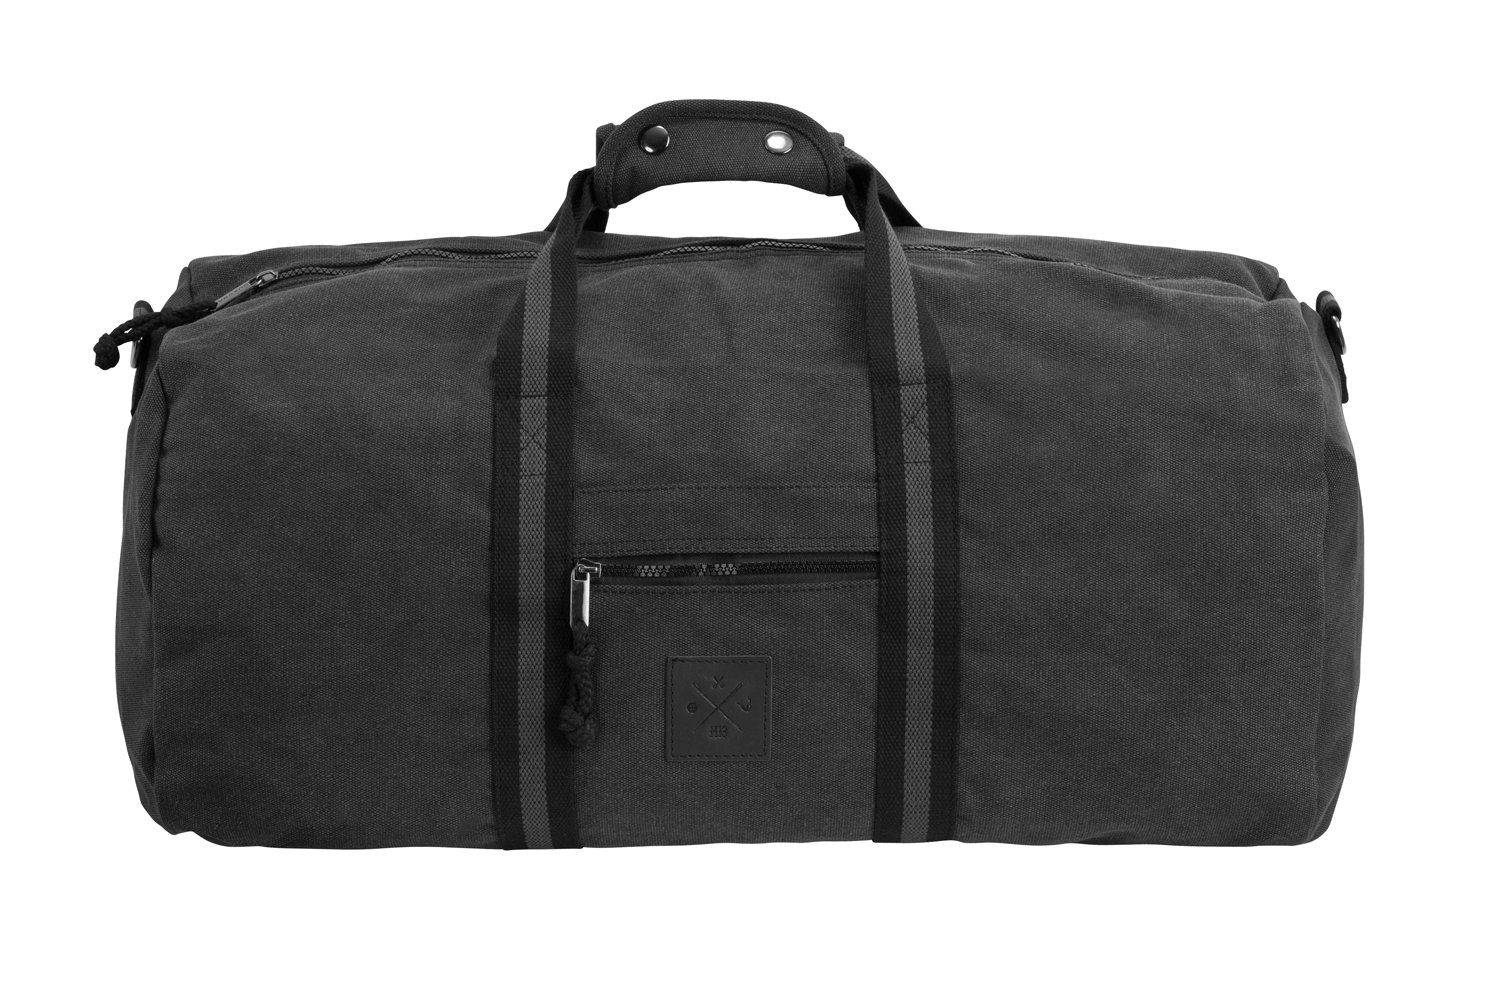 Manufaktur13 Sporttasche Canvas Duffel Bag - Sporttasche, Barrel Bag, Reisetasche, 45L Fassungsvermögen Grey Matter